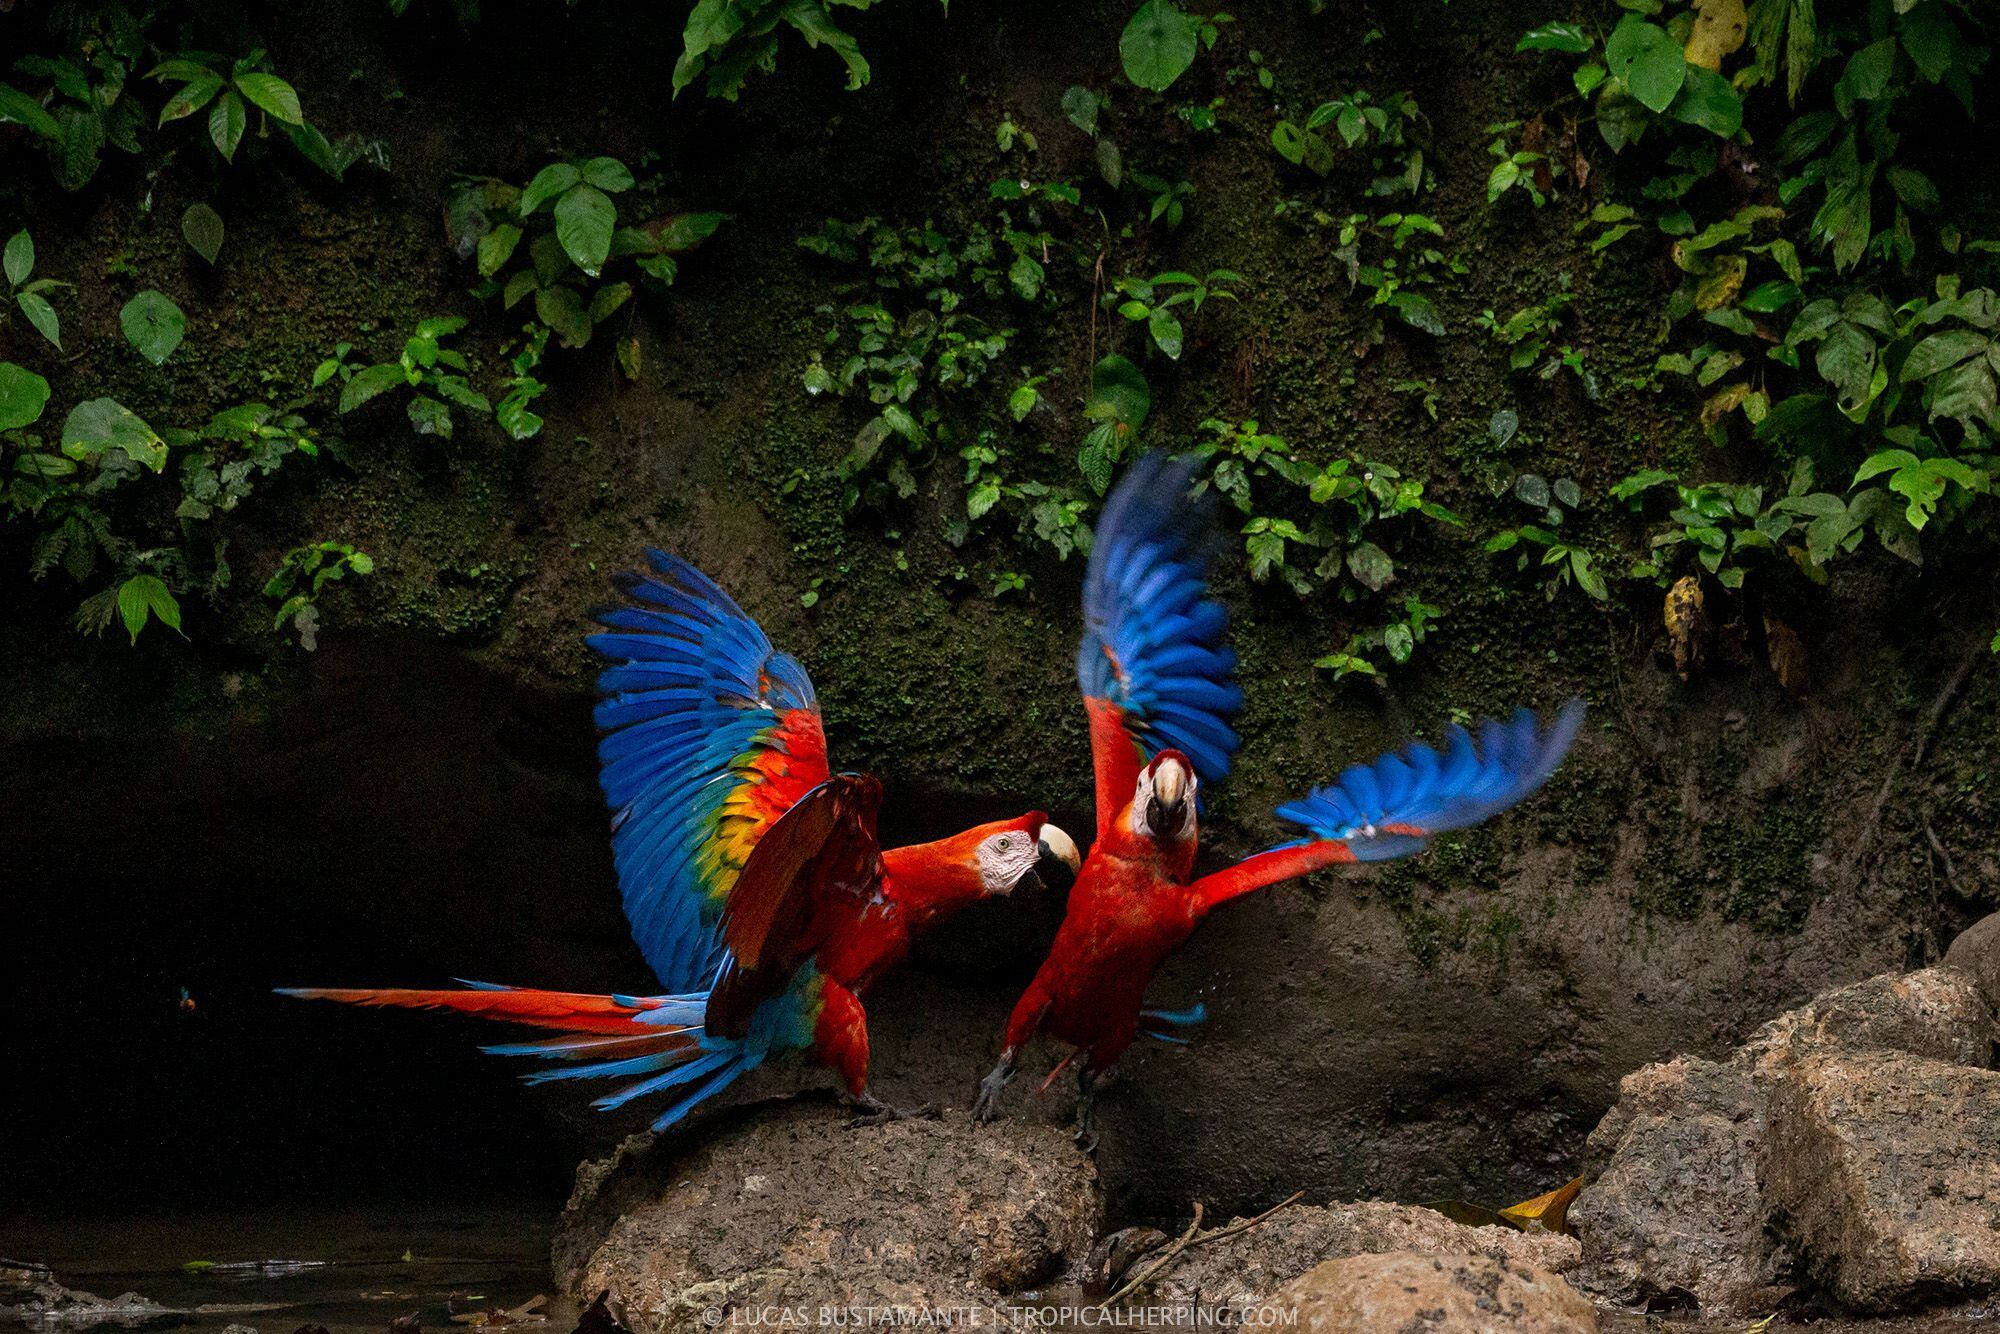 Fotografía de dos guacamayos, en su hábitat, tomada por Lucas Bustamante, fotógrafo y biólogo ecuatoriano.